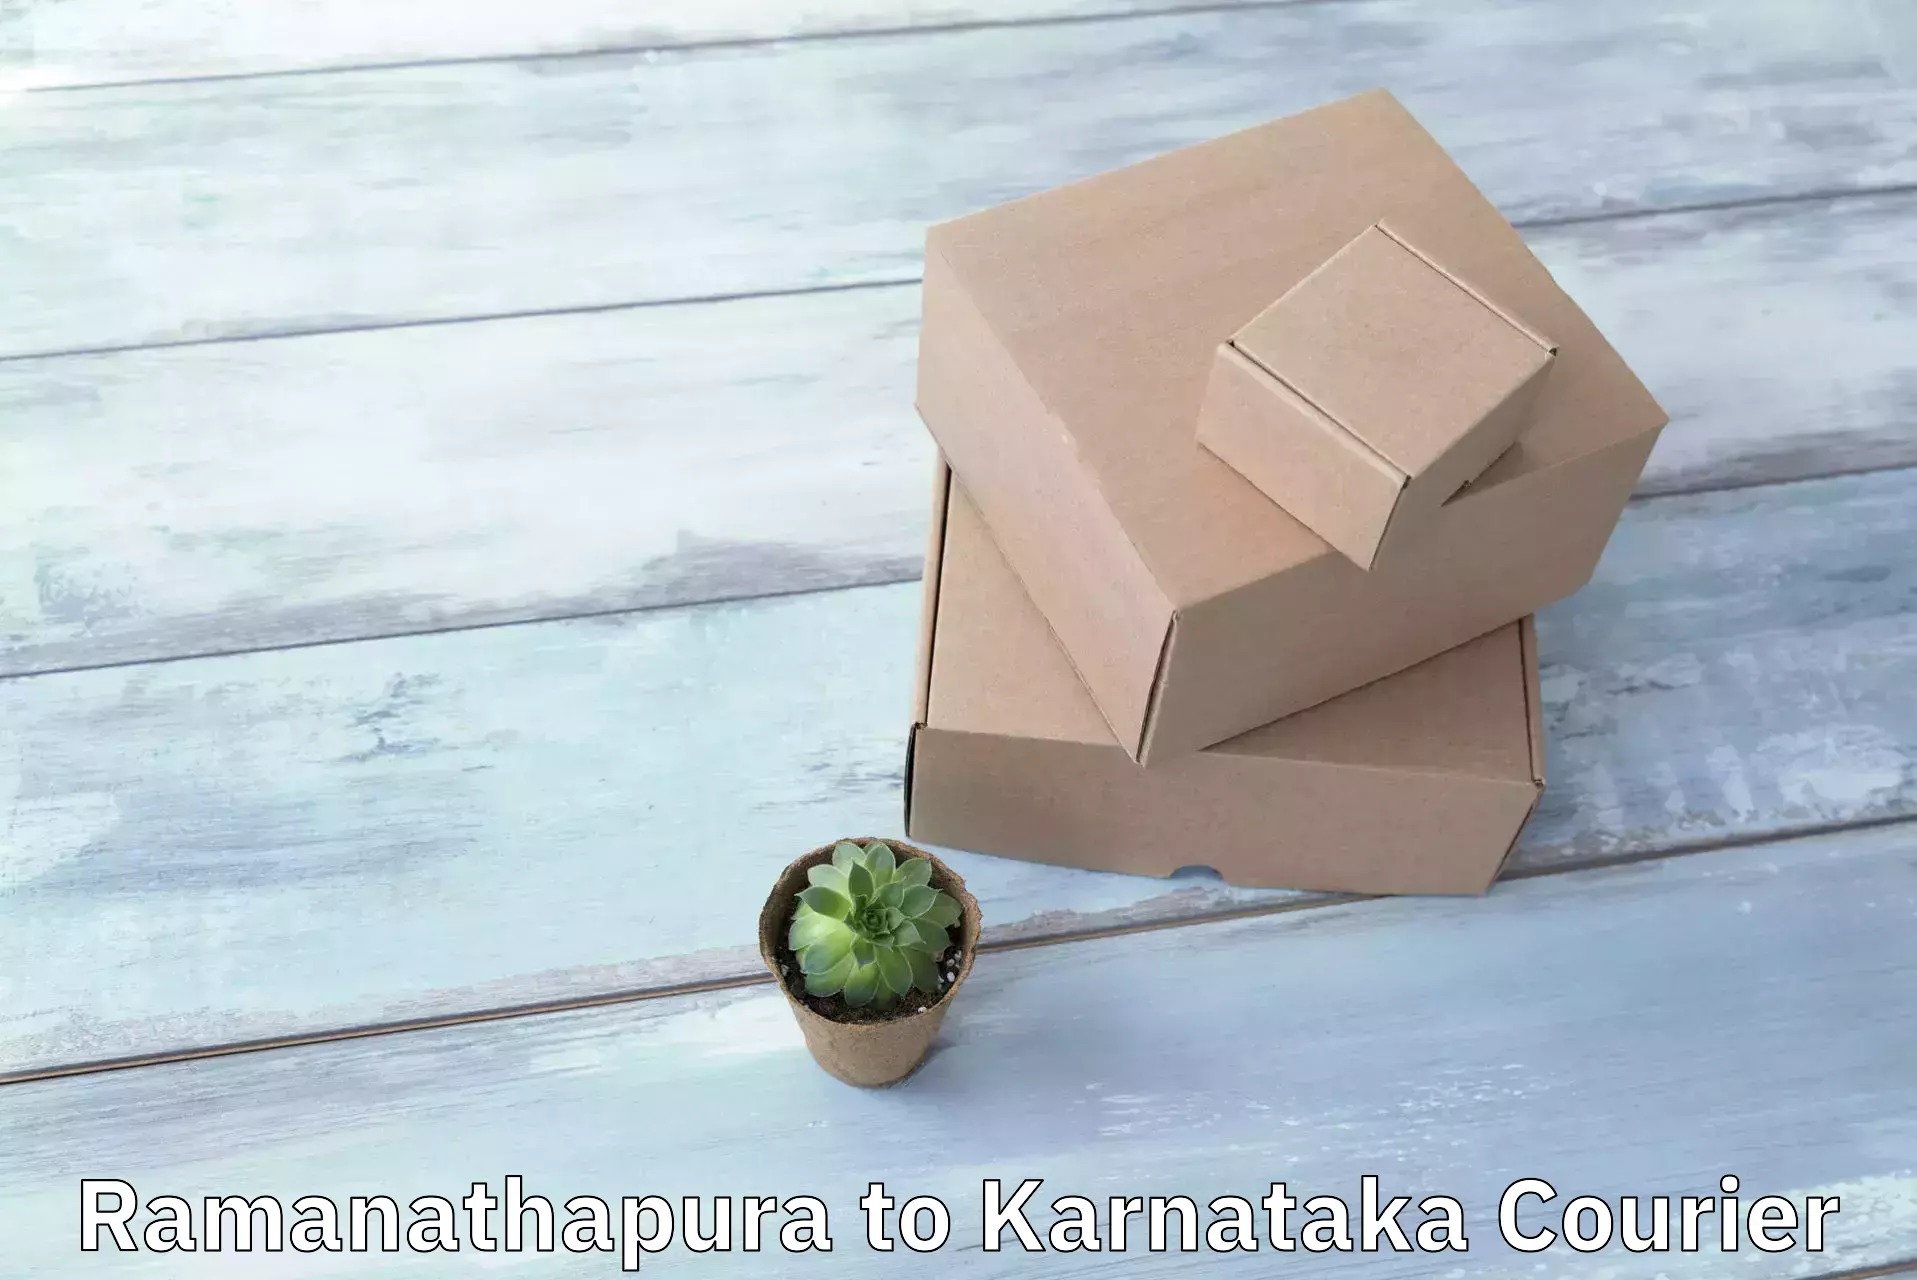 Modern delivery methods Ramanathapura to Basavakalyan